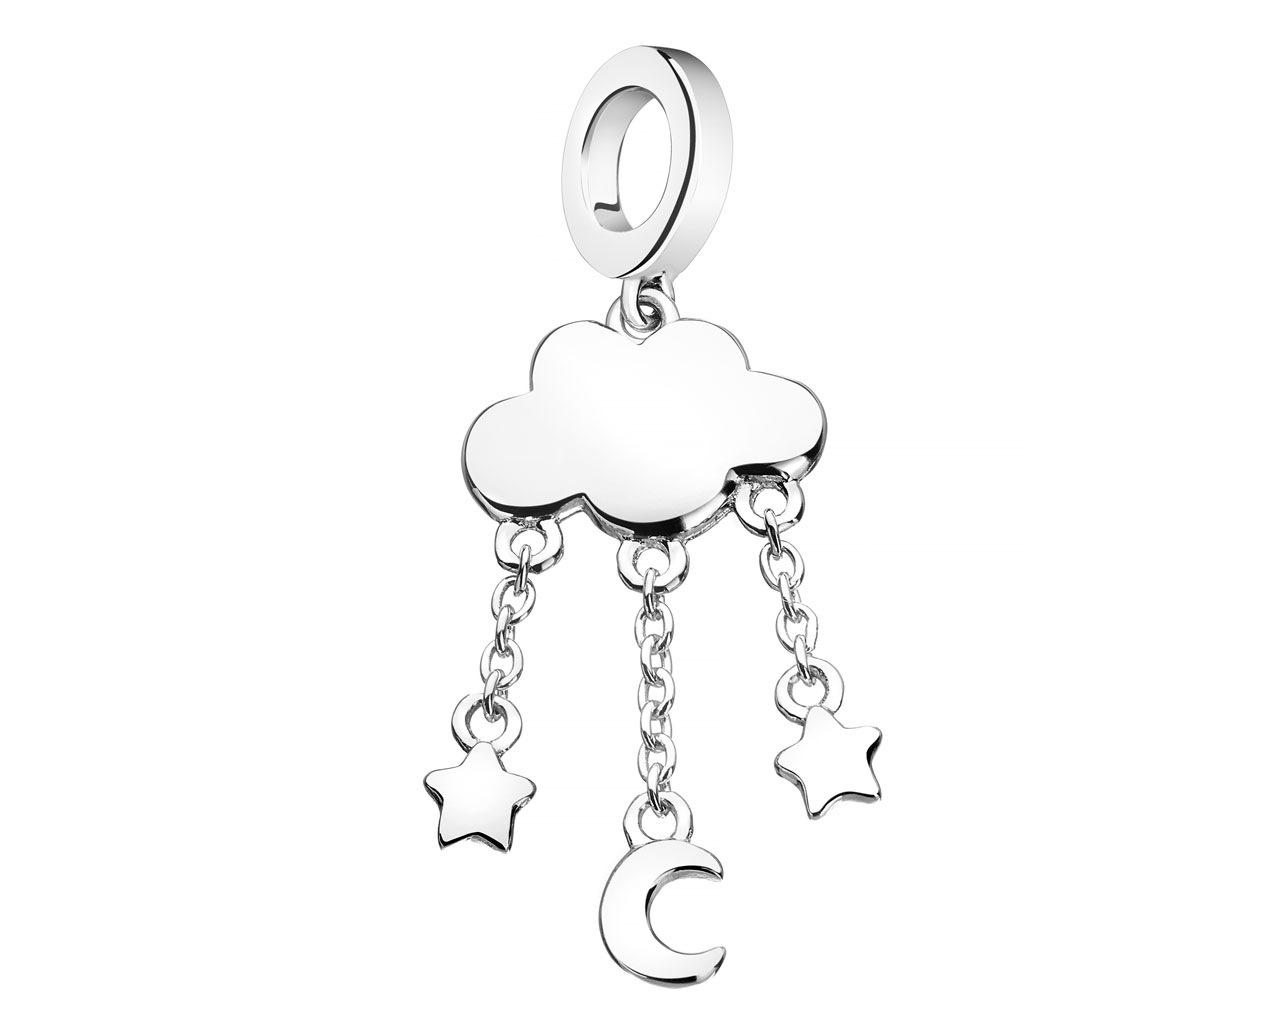 Stříbný přívěsek na náramek beads - Newborn, oblak, hvězdy, měsíc